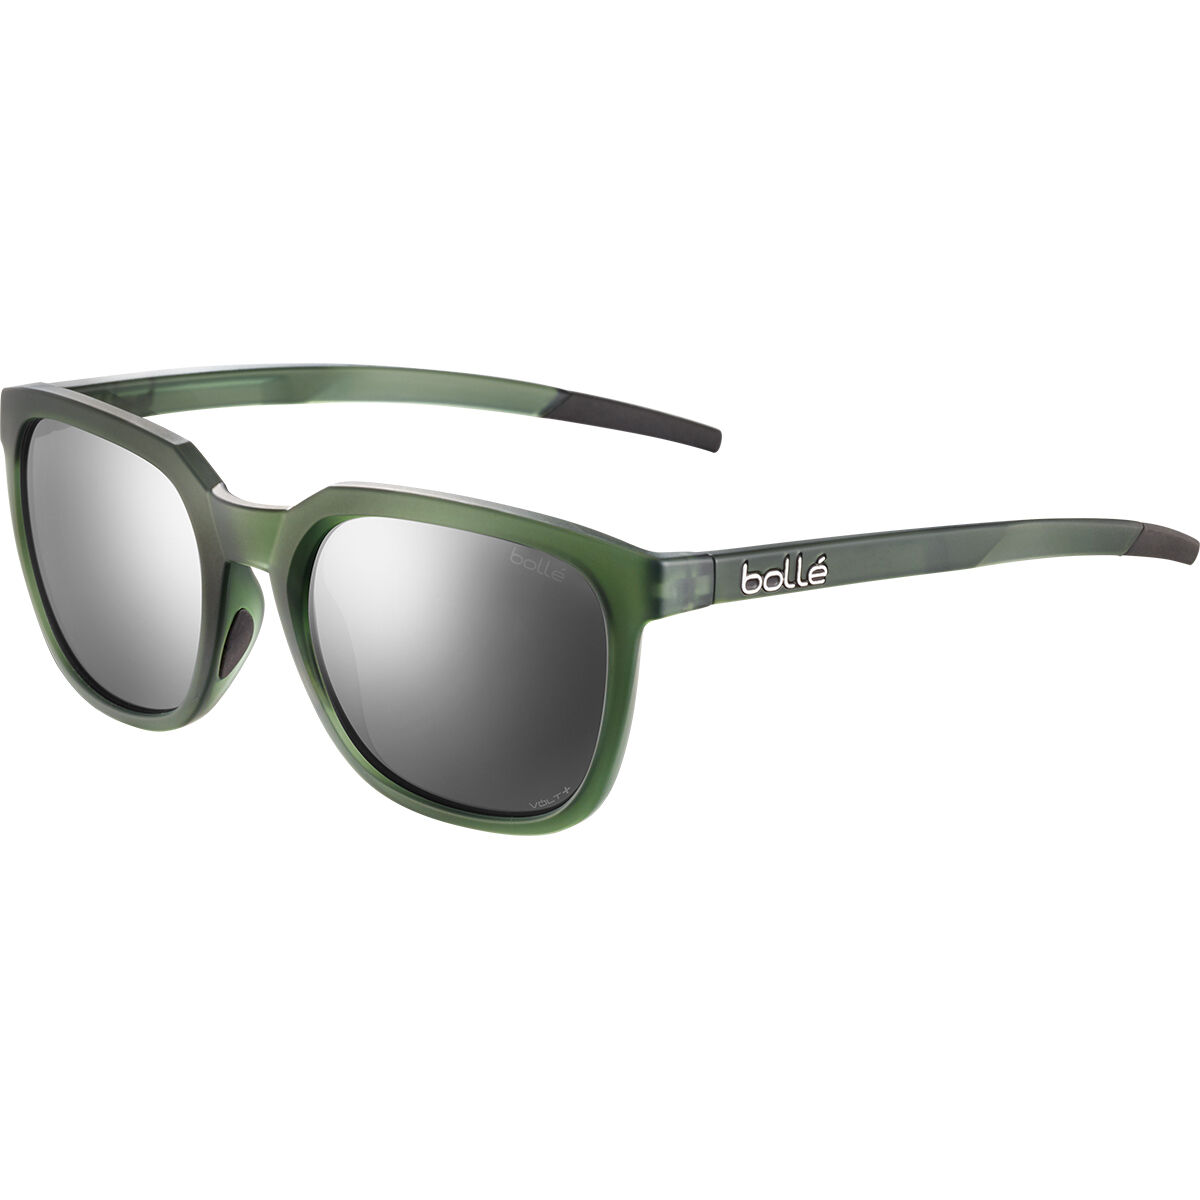 New Bolle CLINT Polarized Sunglasses | Tortoise / Polar A14 AR Lens | eBay